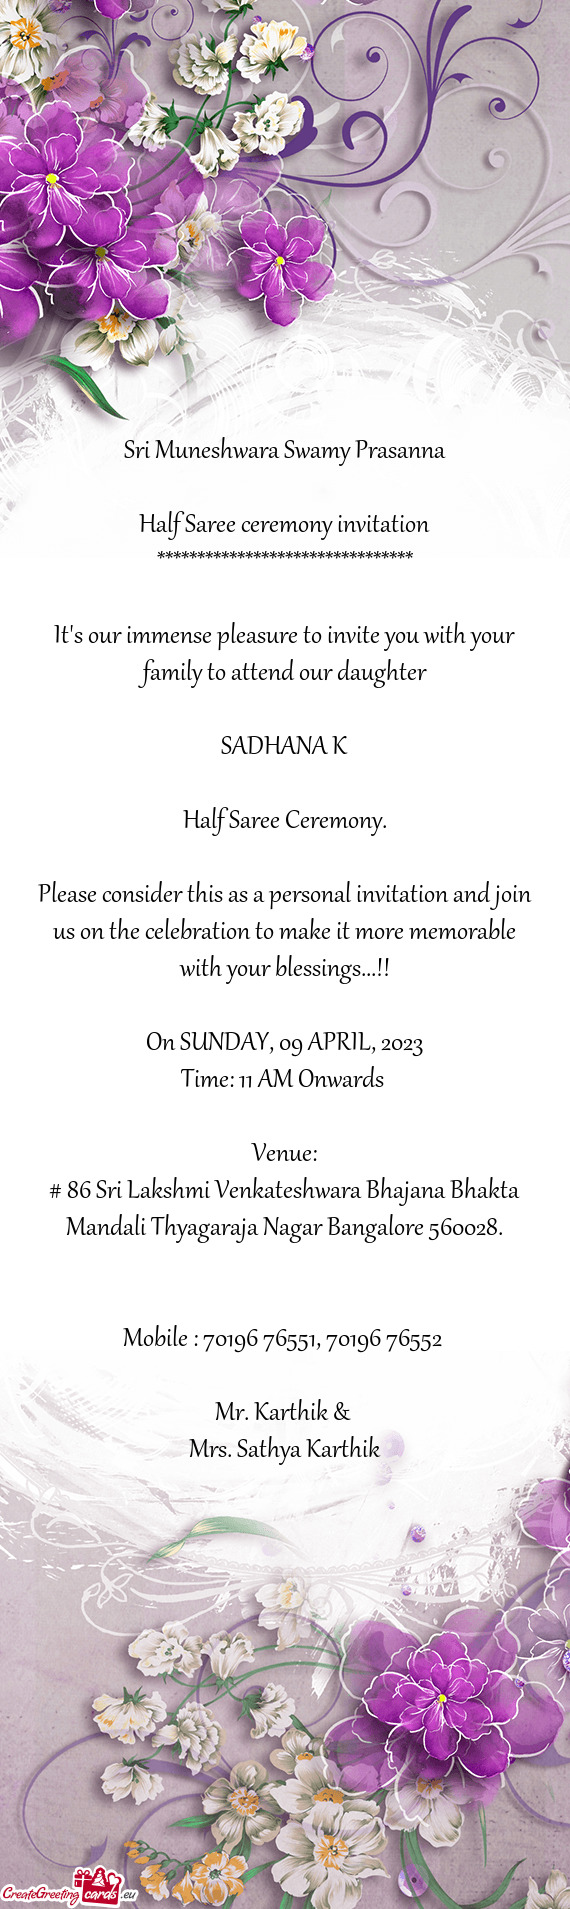 # 86 Sri Lakshmi Venkateshwara Bhajana Bhakta Mandali Thyagaraja Nagar Bangalore 560028